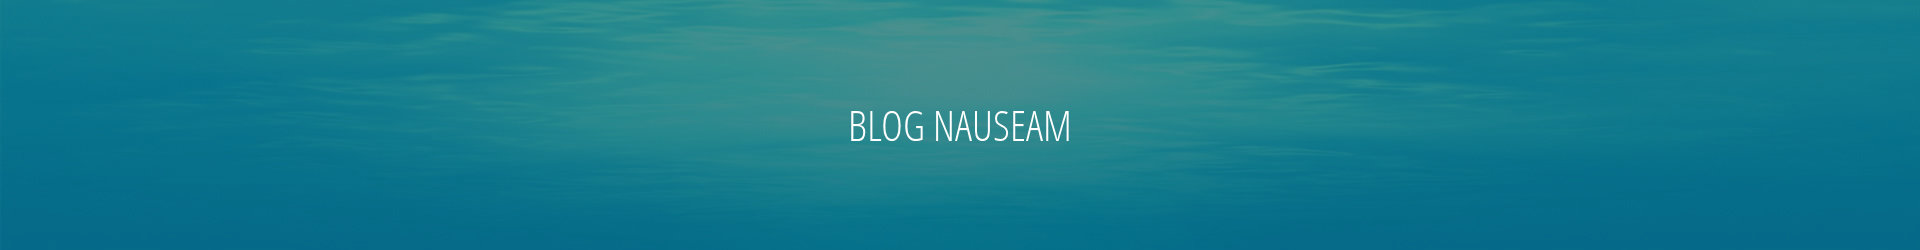 blog nauseam maintenance issues